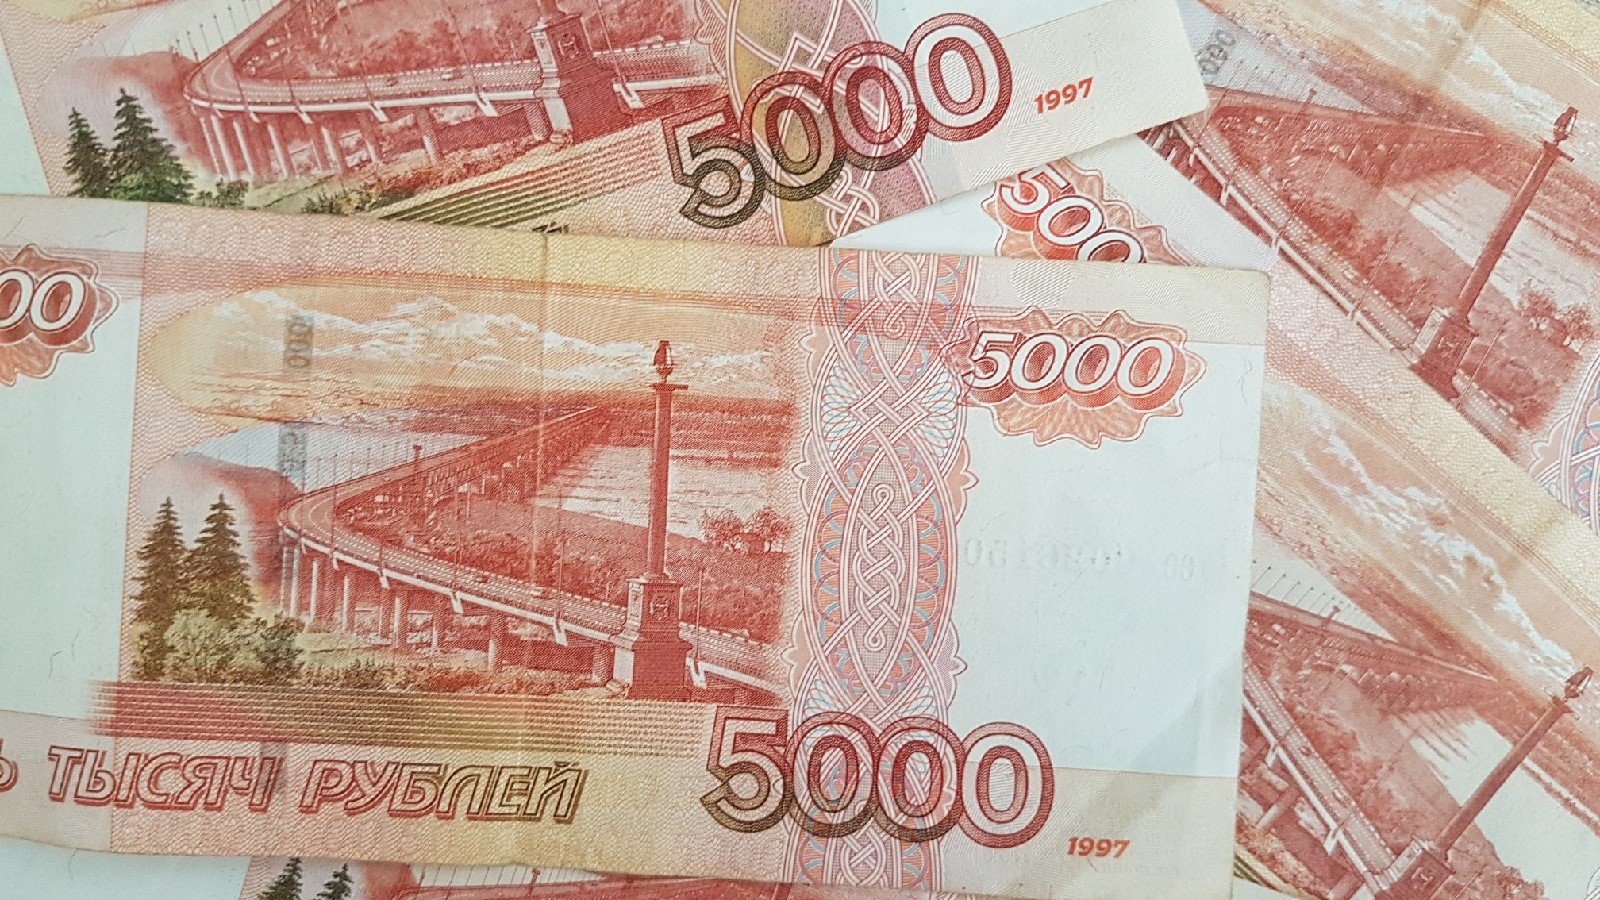 80 тысяч 60 тысяч. Деньги рубли. Восемьдесят тысяч рублей. Шестьдесят тысяч рублей. Двести тысяч рублей.